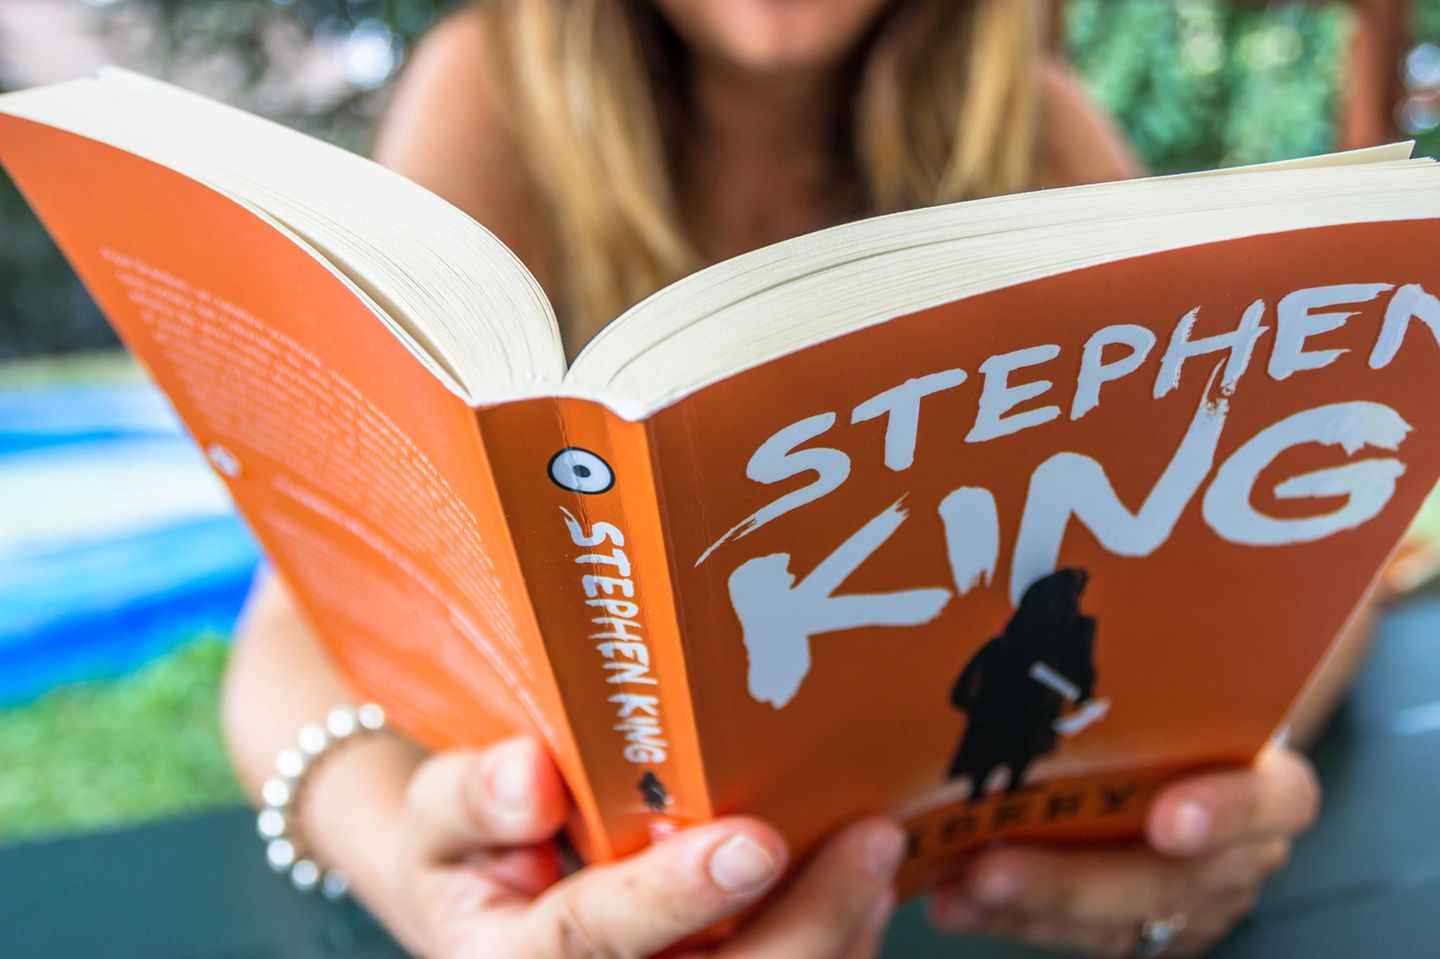 Stephen-King-Buch, Frau liest in dem Buch "Misery" von Stephen King